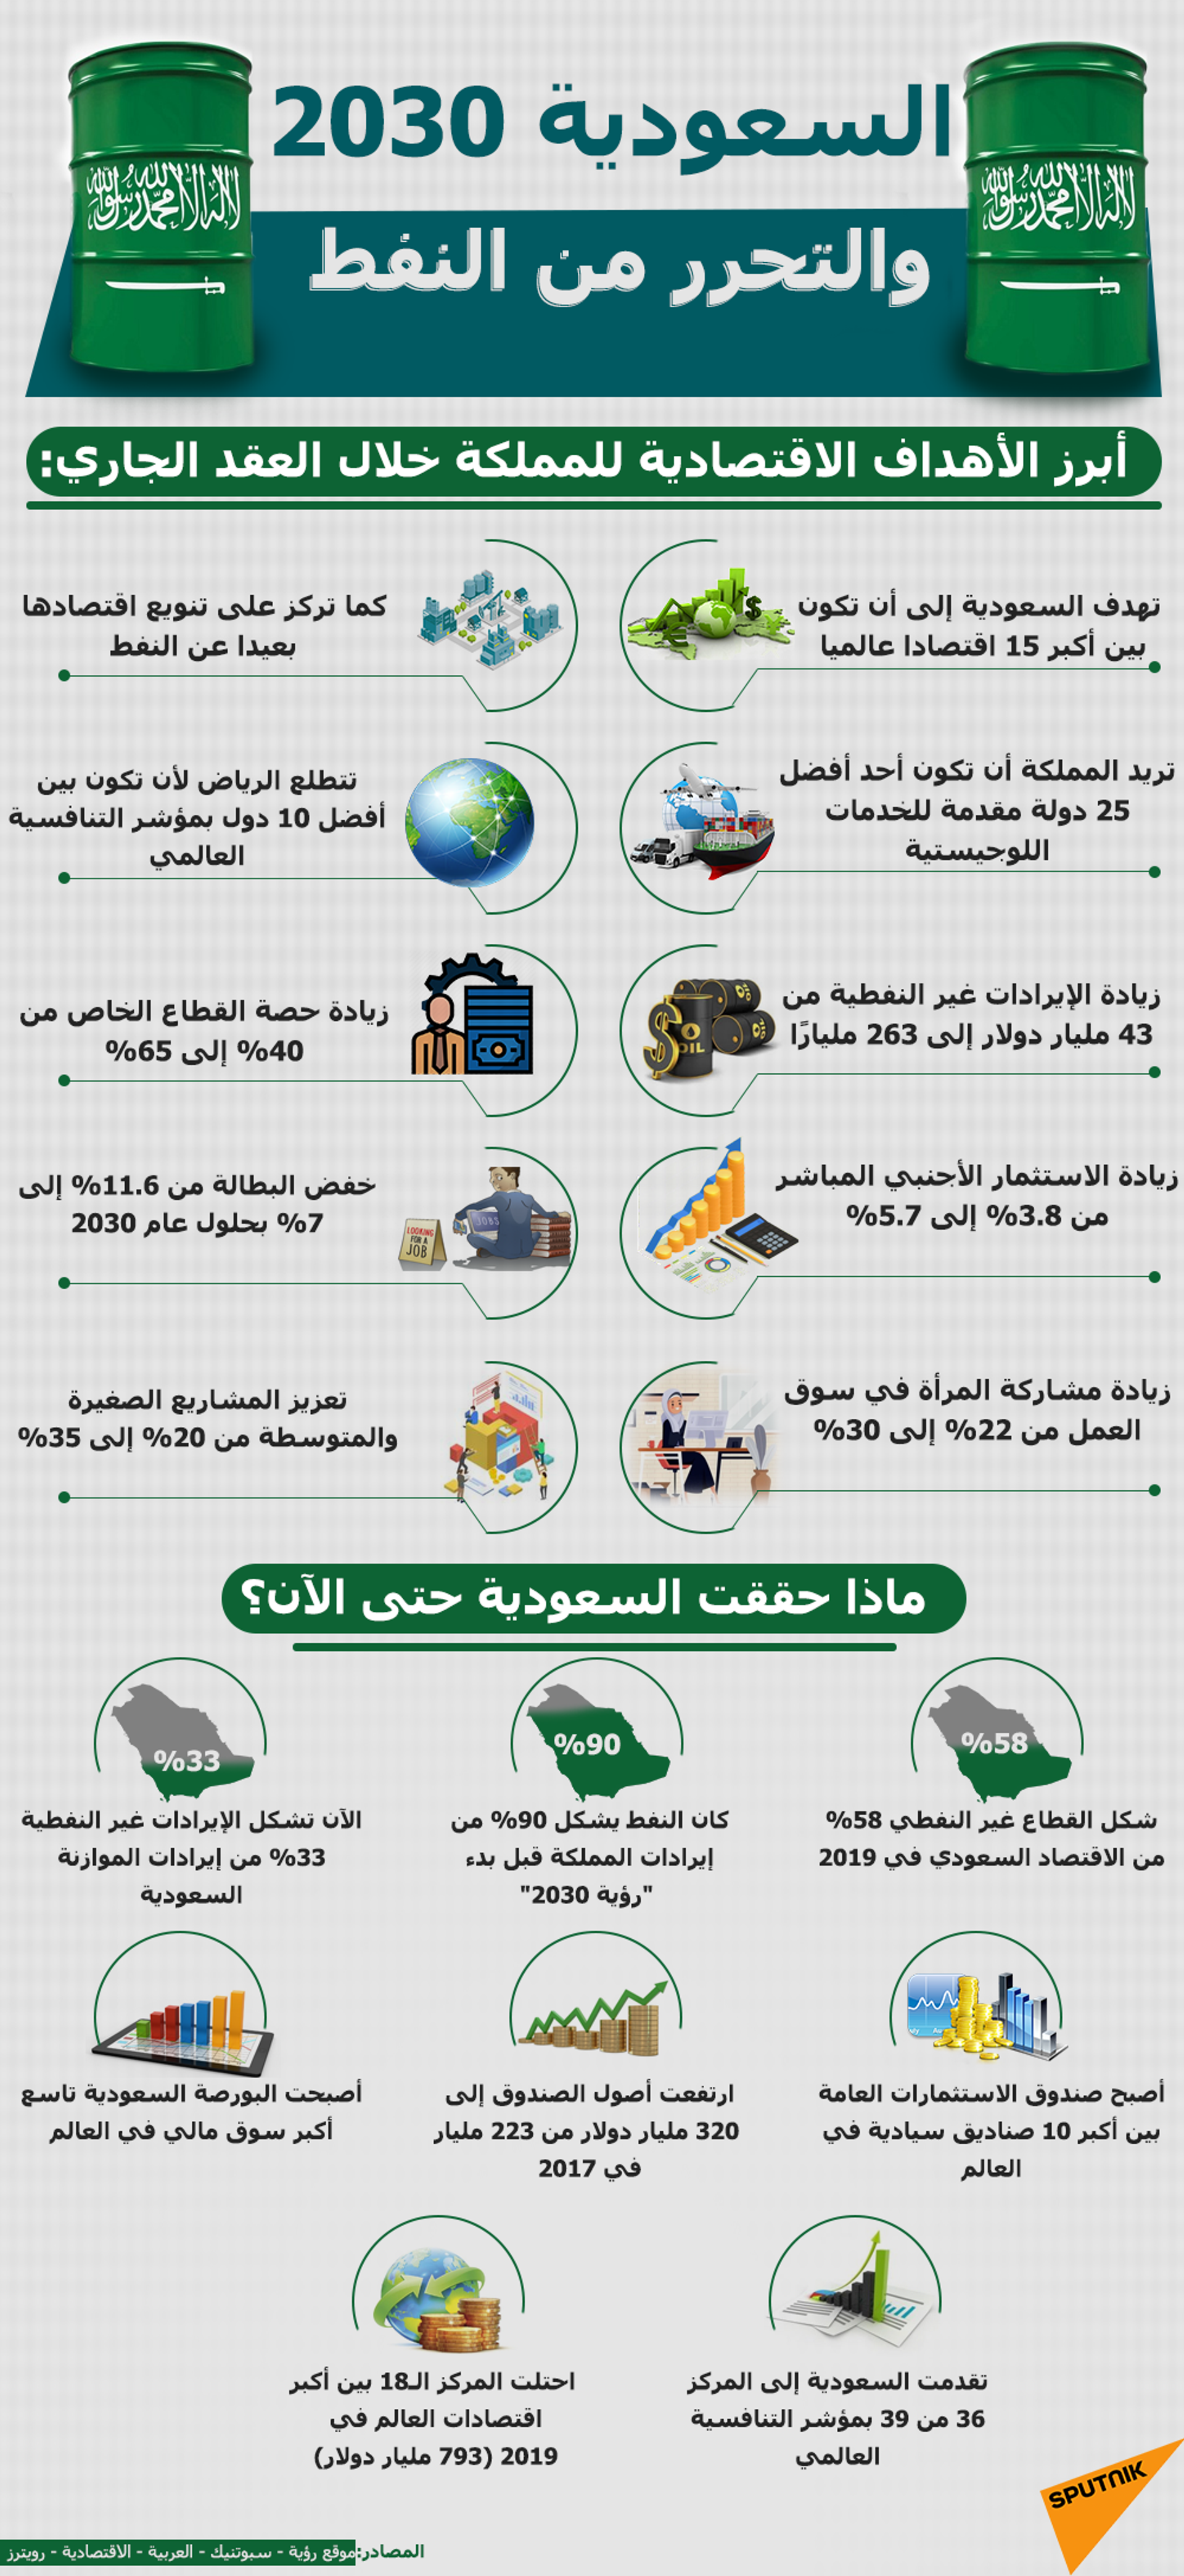 أرباح سابك السعودية تتجاوز 2 مليار دولار في الربع الثاني من 2021 - سبوتنيك عربي, 1920, 05.08.2021